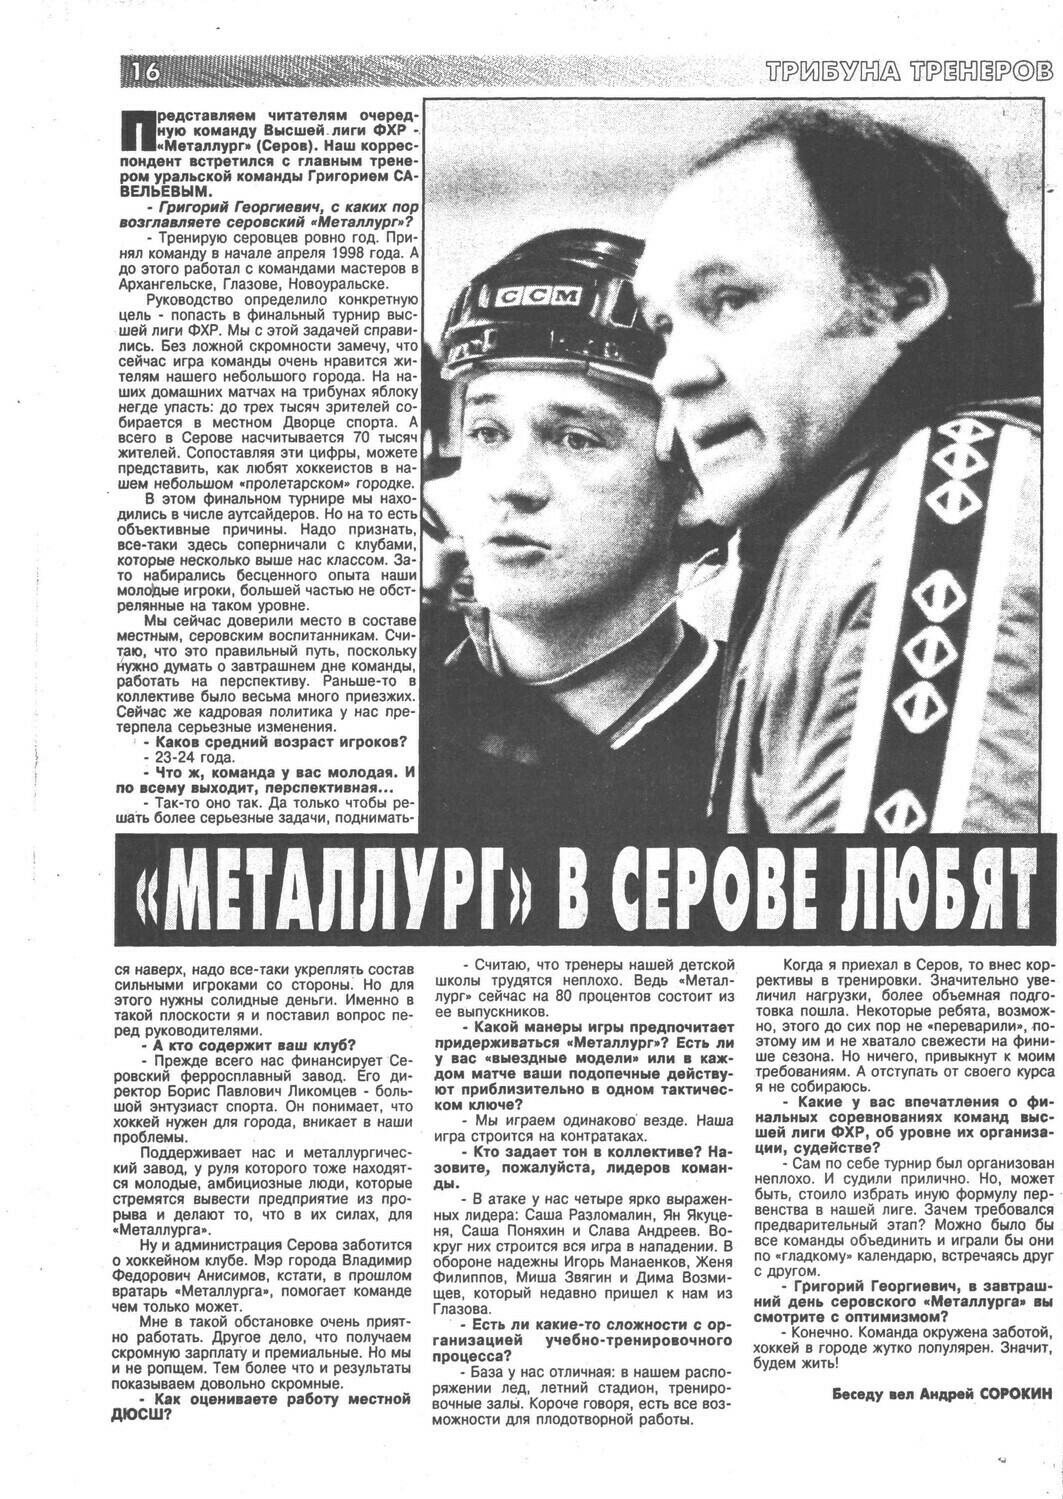 Еженедельник "Хоккей" от 1997г.